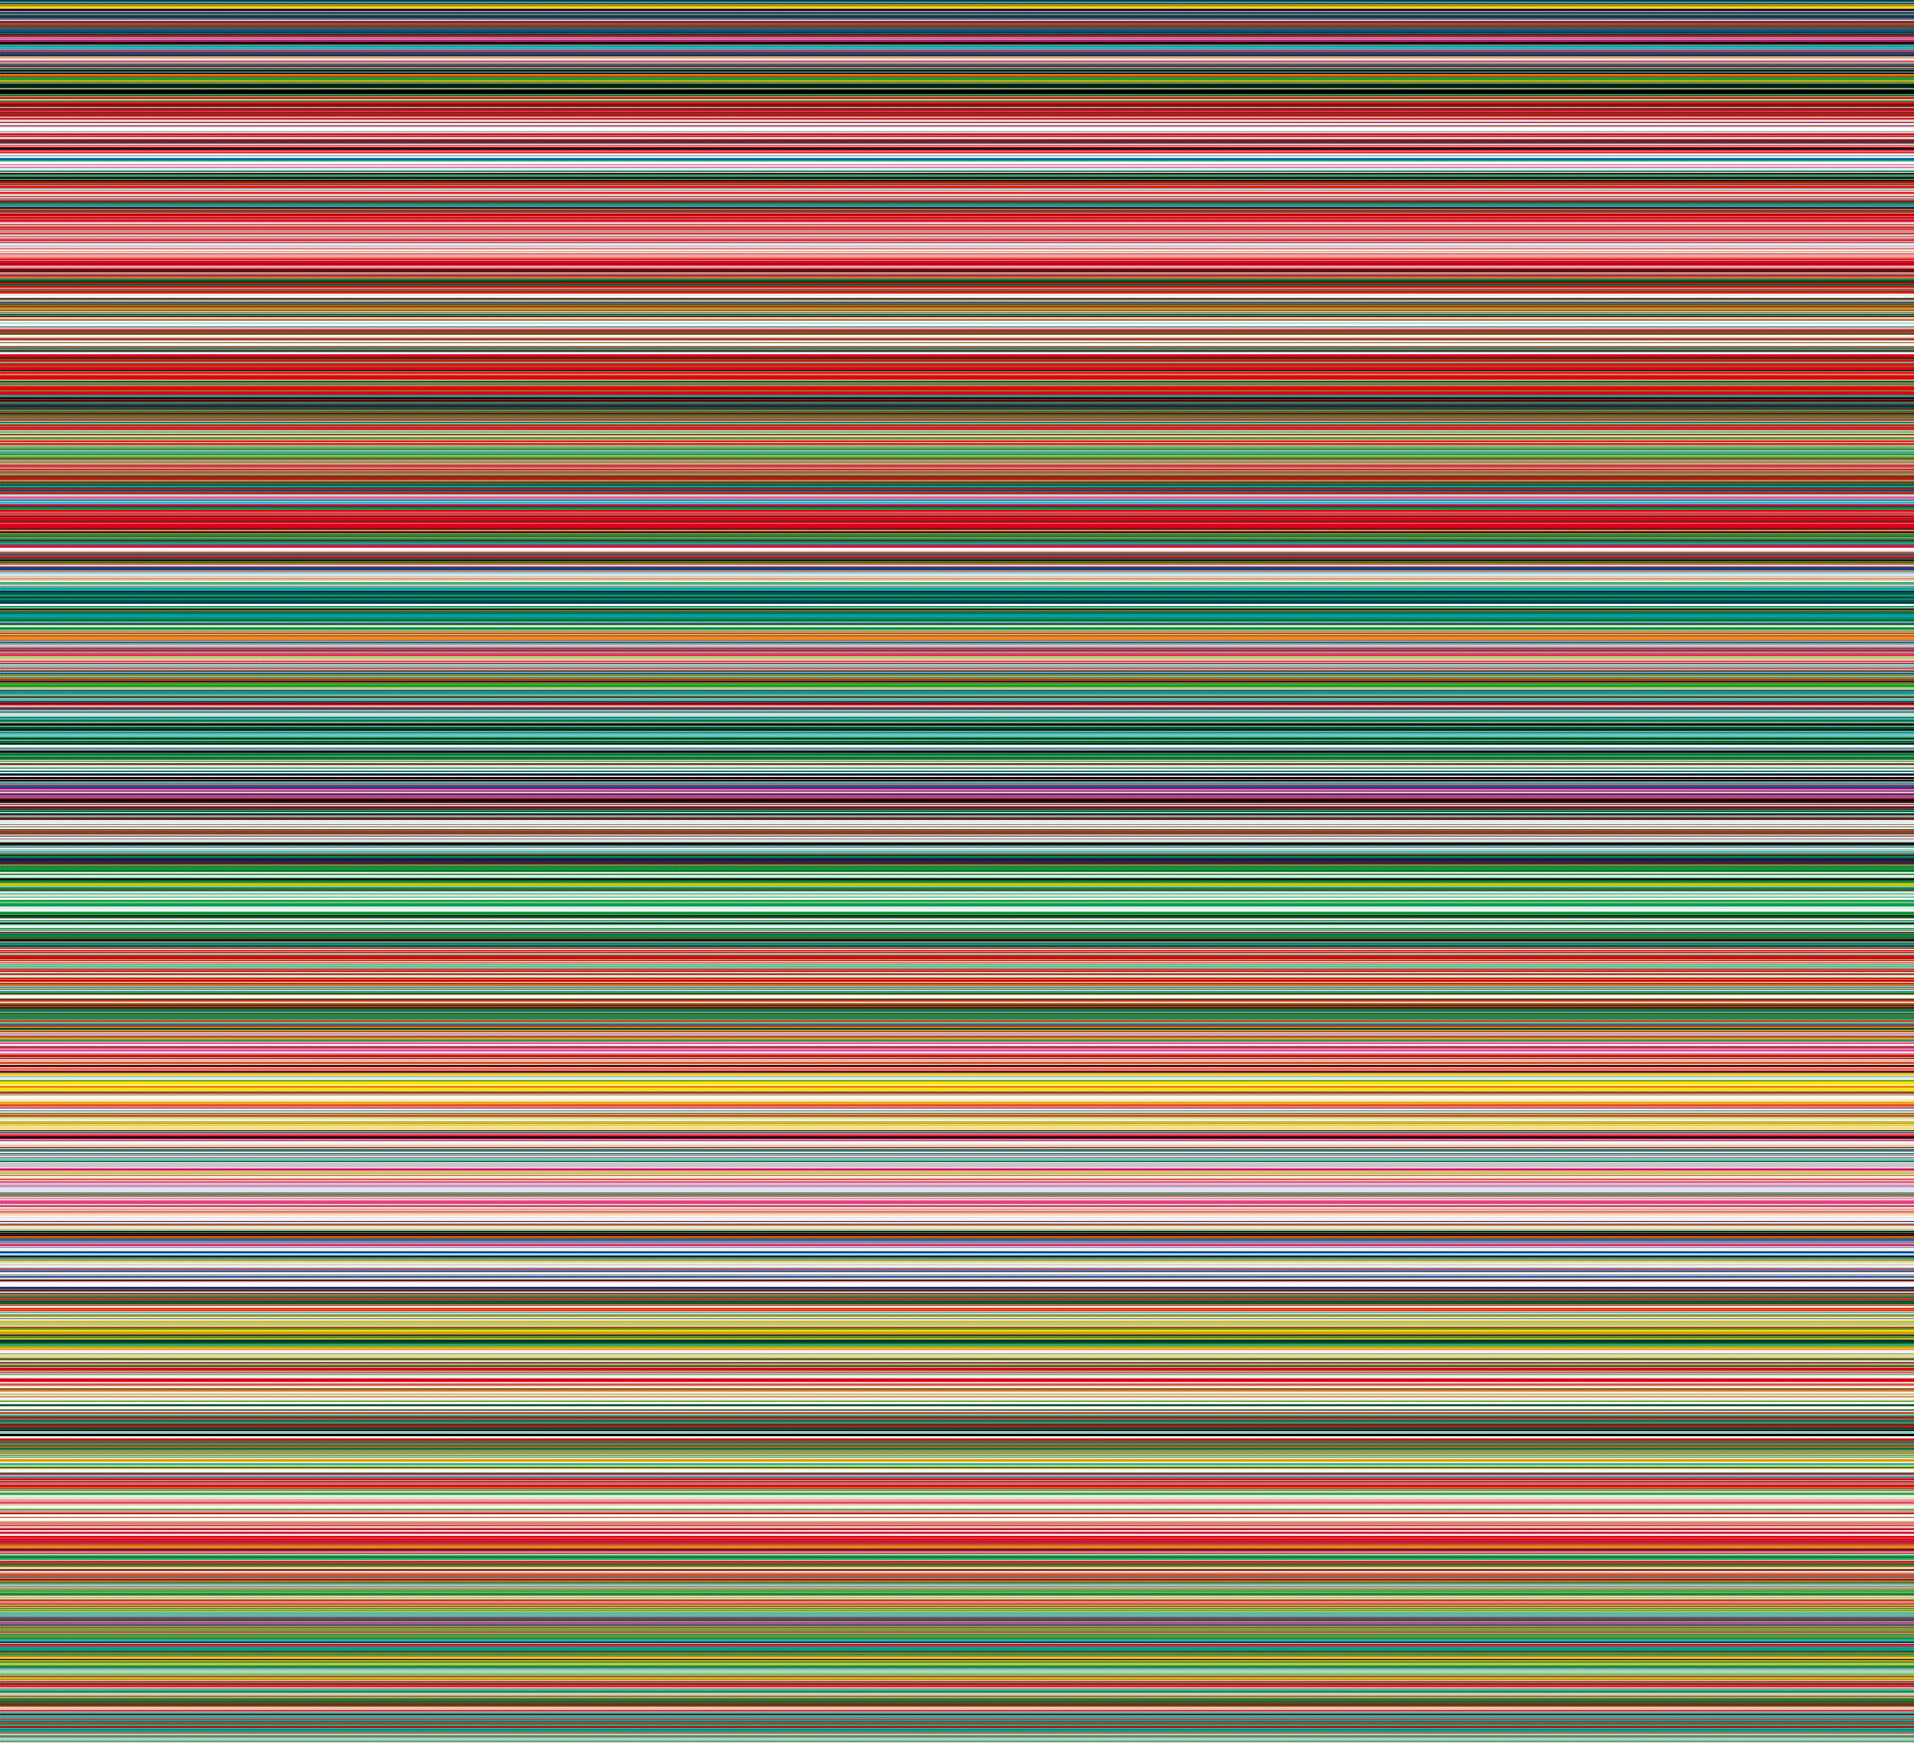 СМУЖКА (927-9) by Gerhard Richter - 2012 - 210 x 230 см 